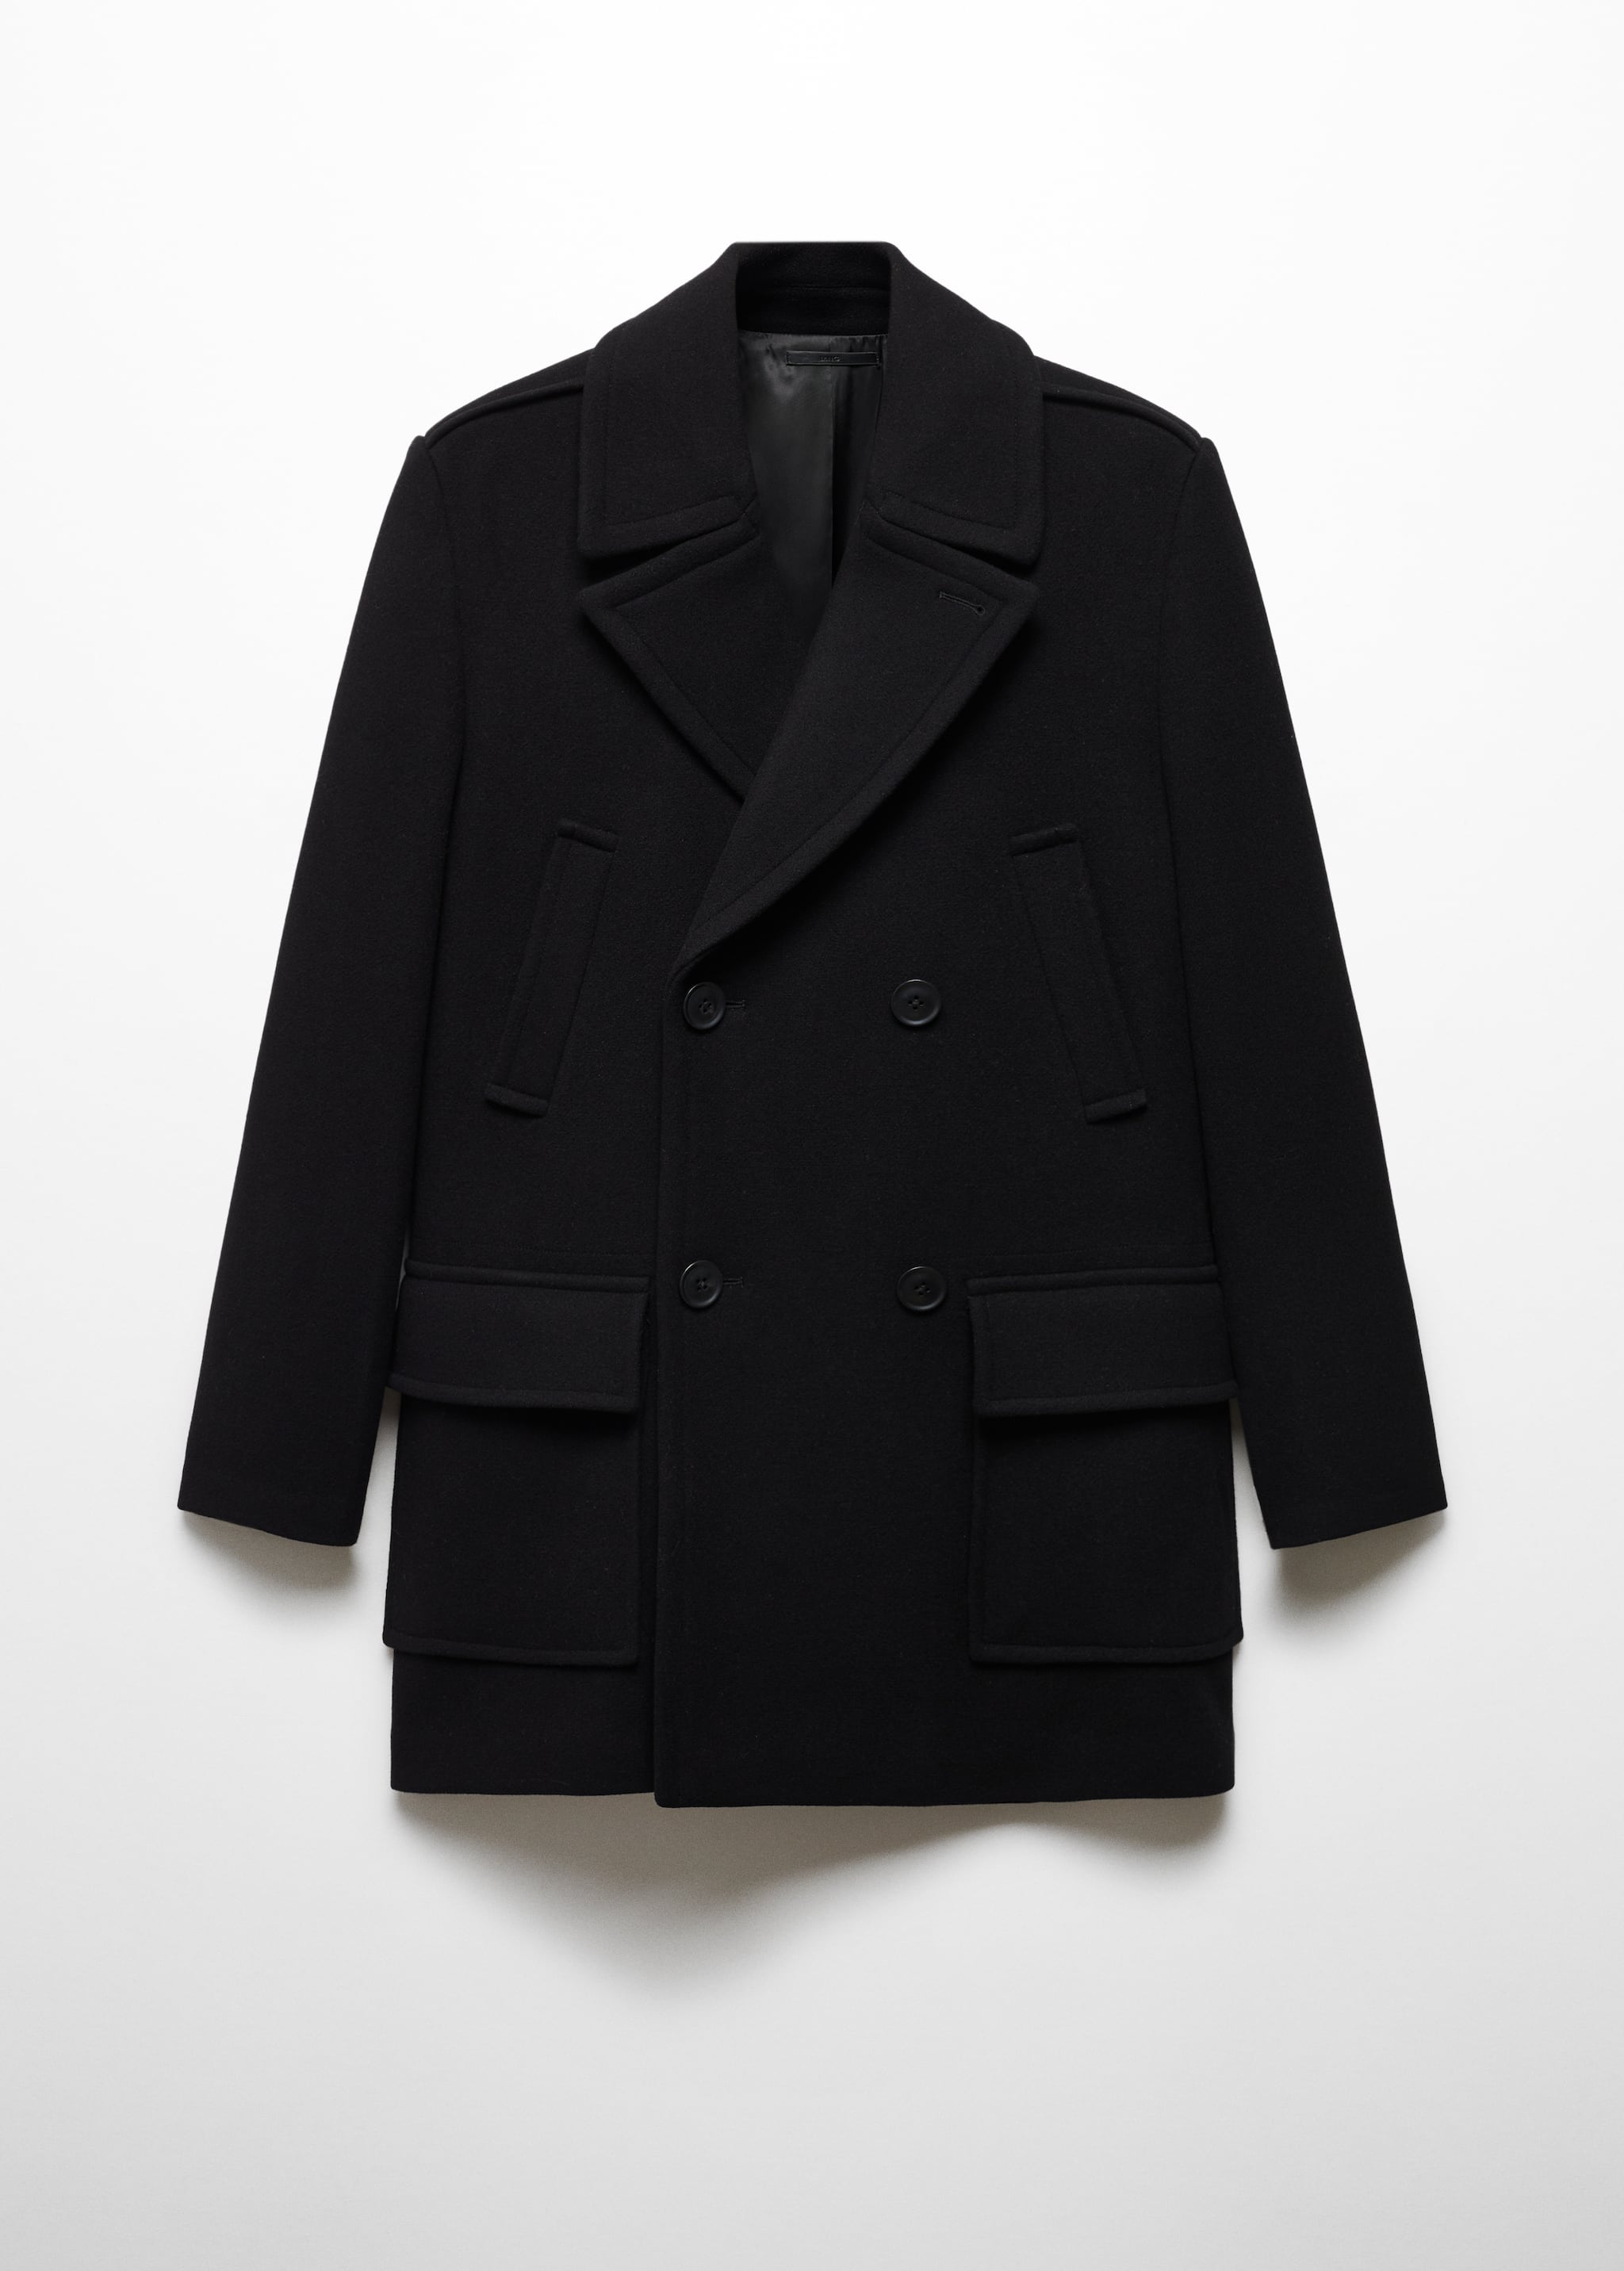 Пальто с запáхом из переработанной шерсти - Изделие без модели